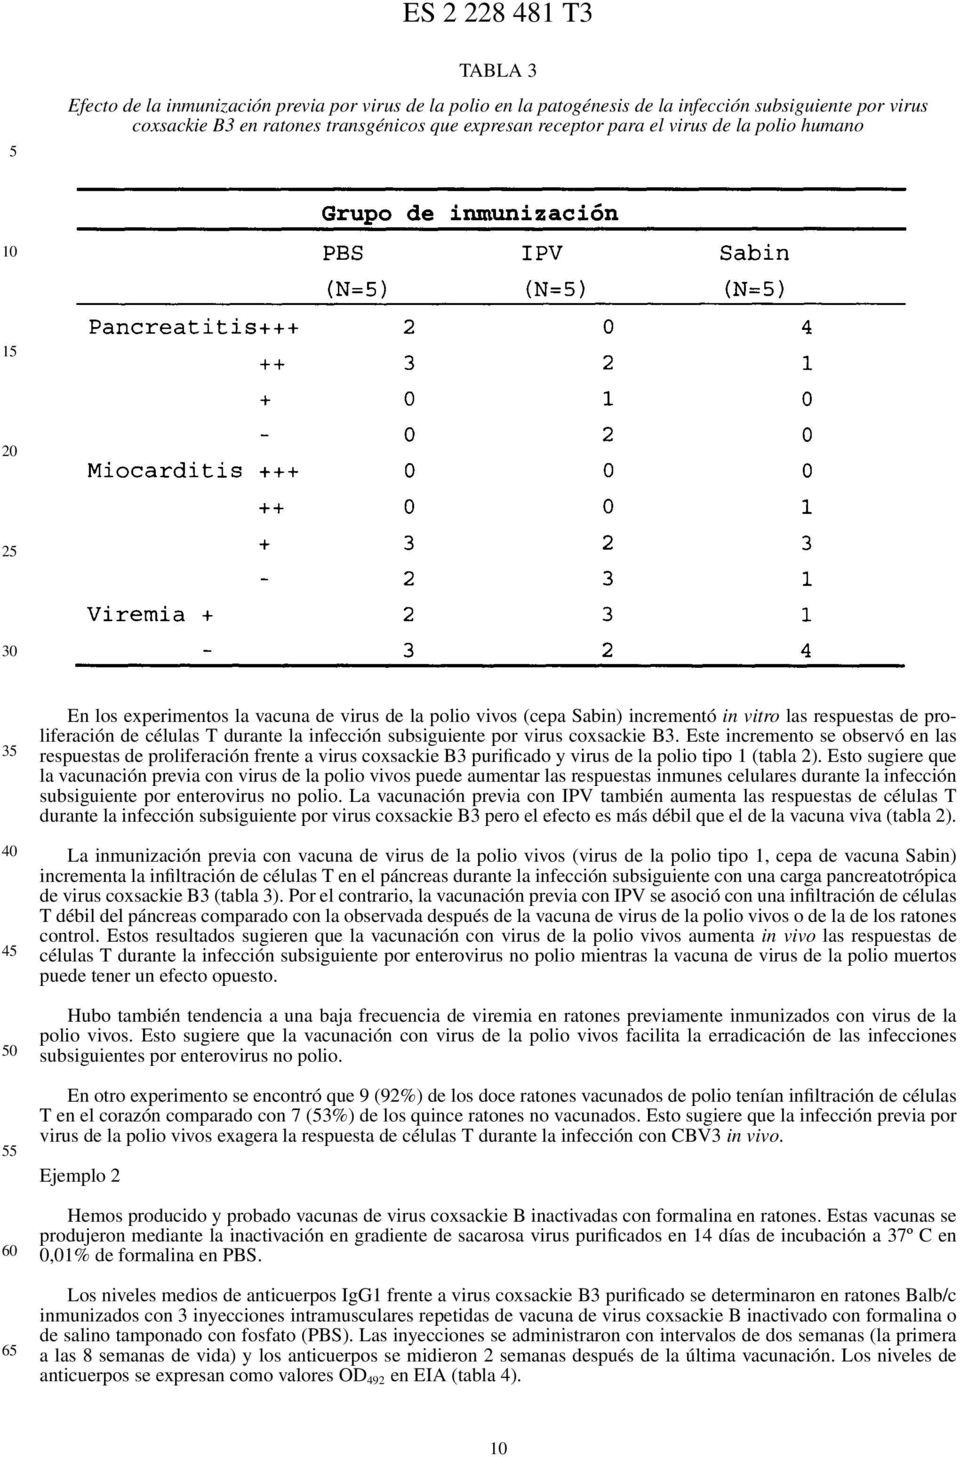 virus coxsackie B3. Este incremento se observó en las respuestas de proliferación frente a virus coxsackie B3 purificado y virus de la polio tipo 1 (tabla 2).